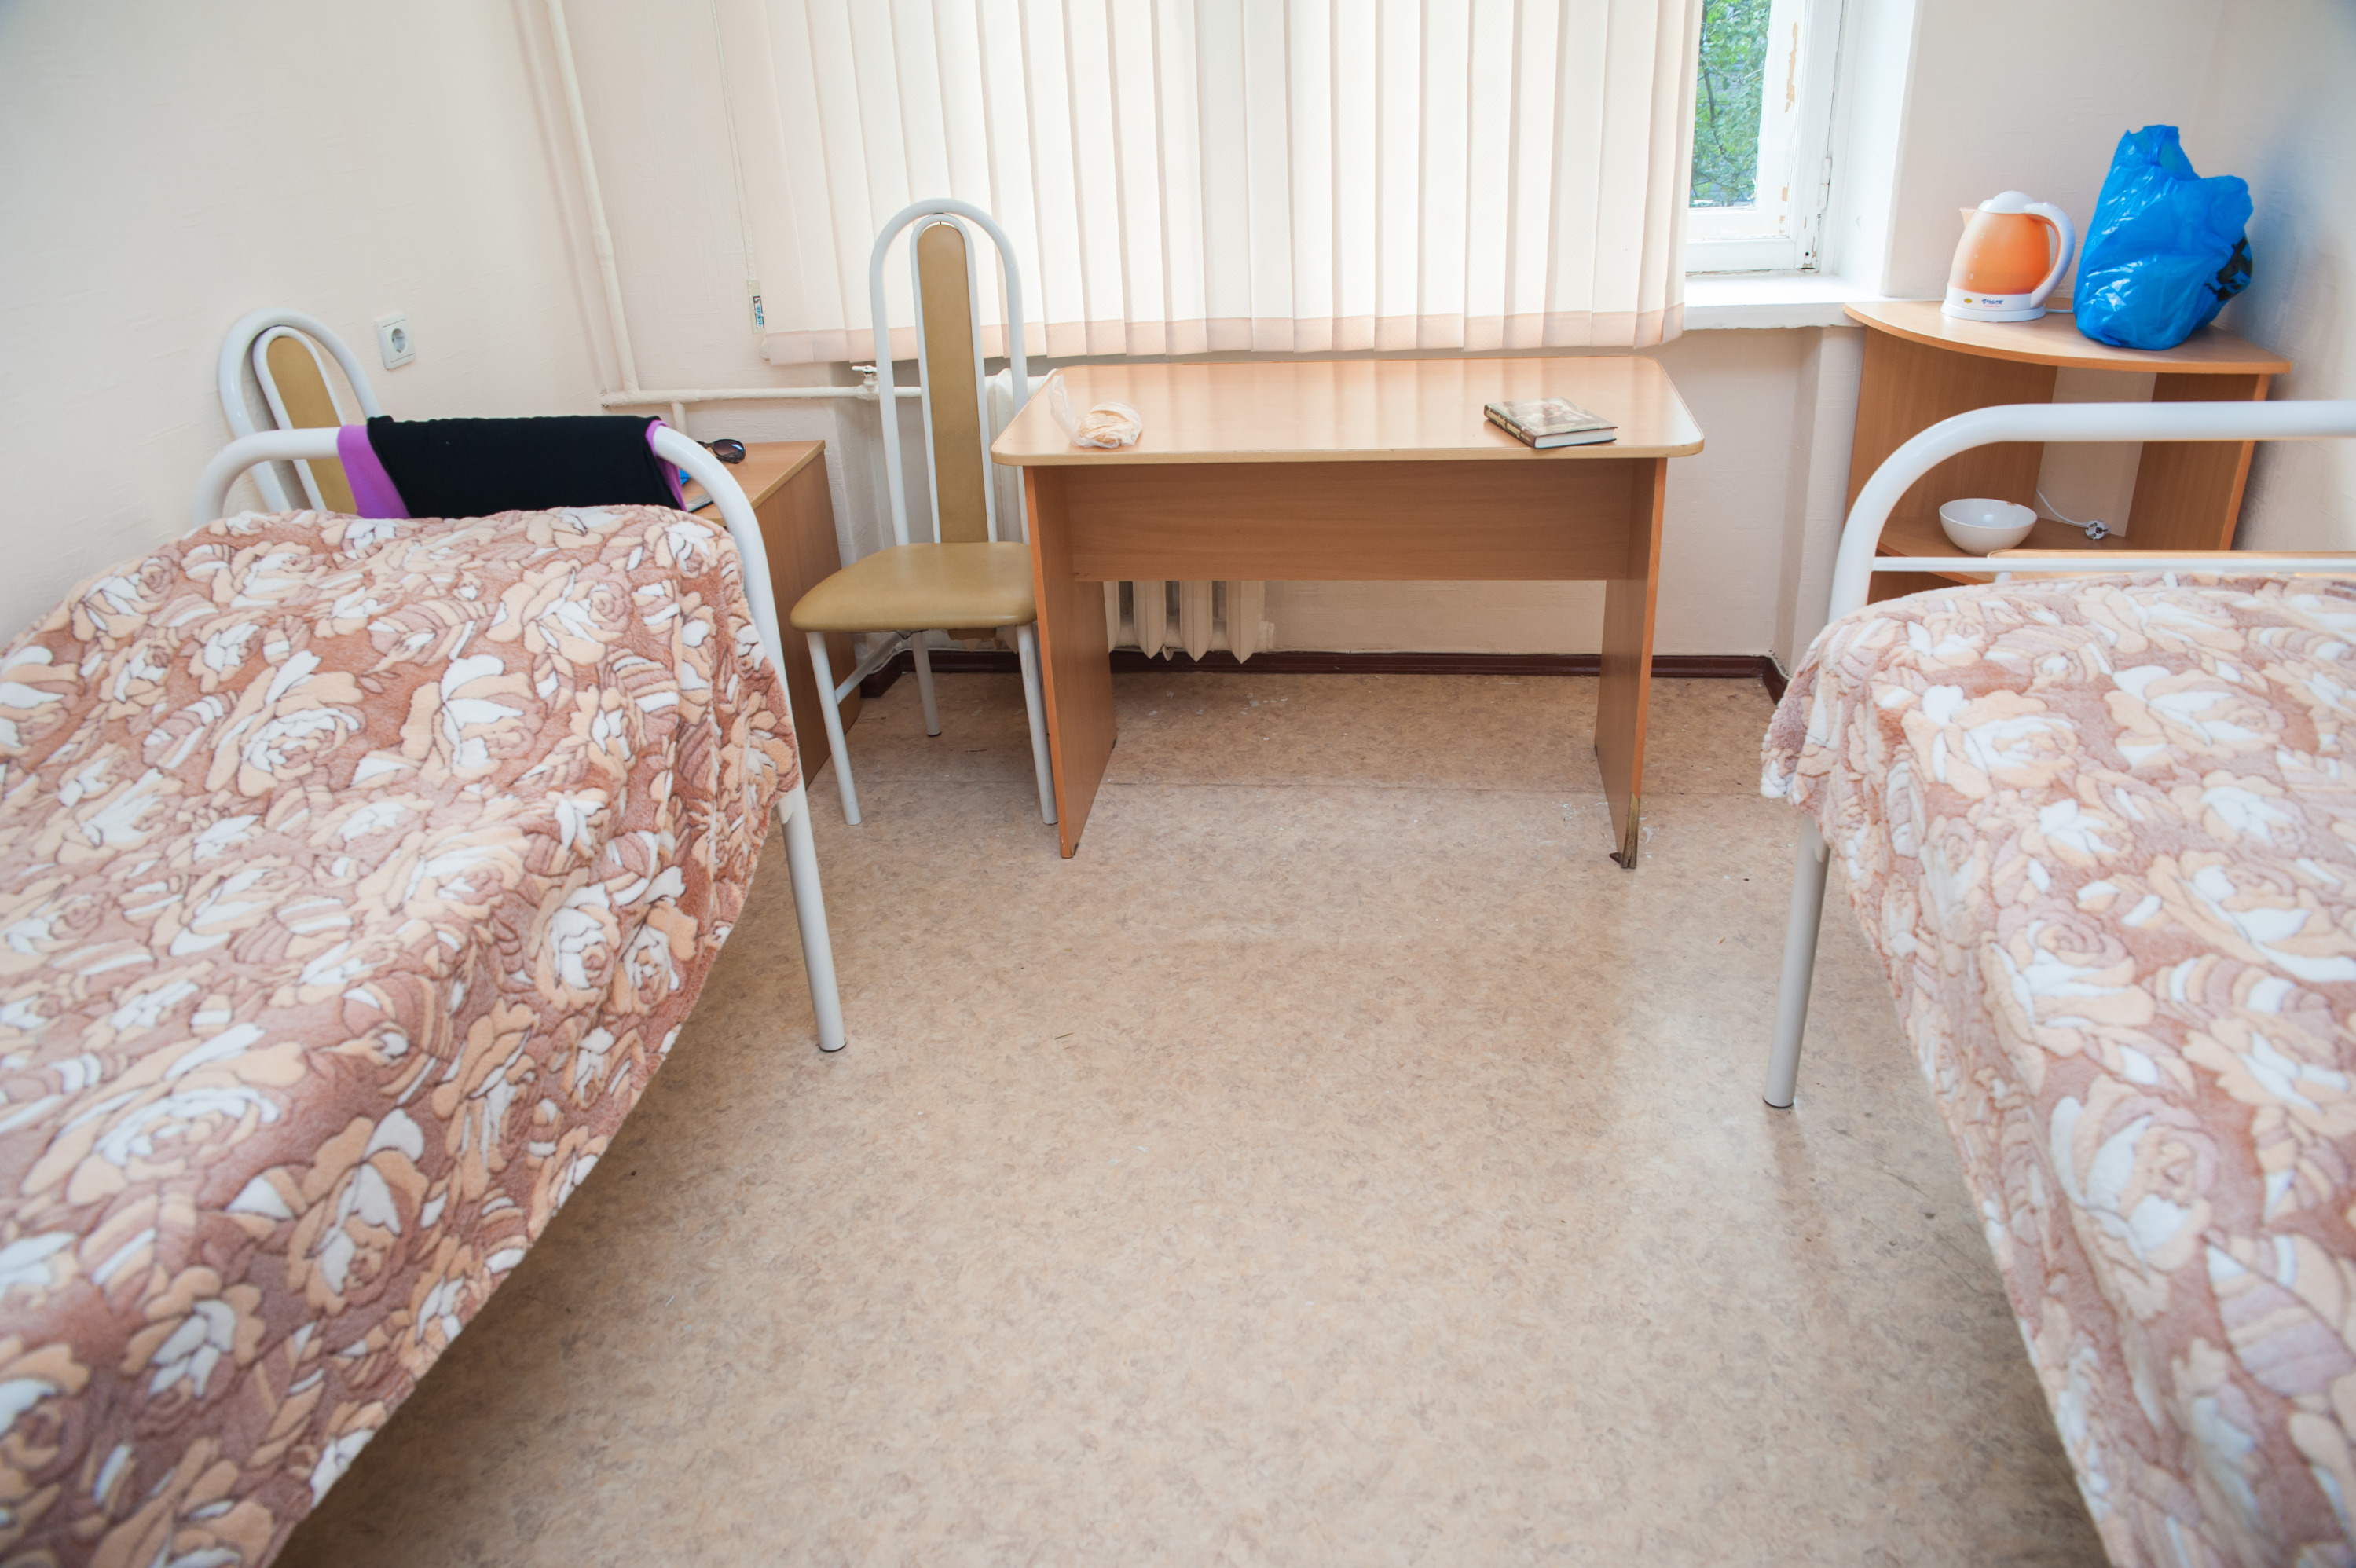 Новосибирские студенты дали советы, что из вещей взять в общежитие